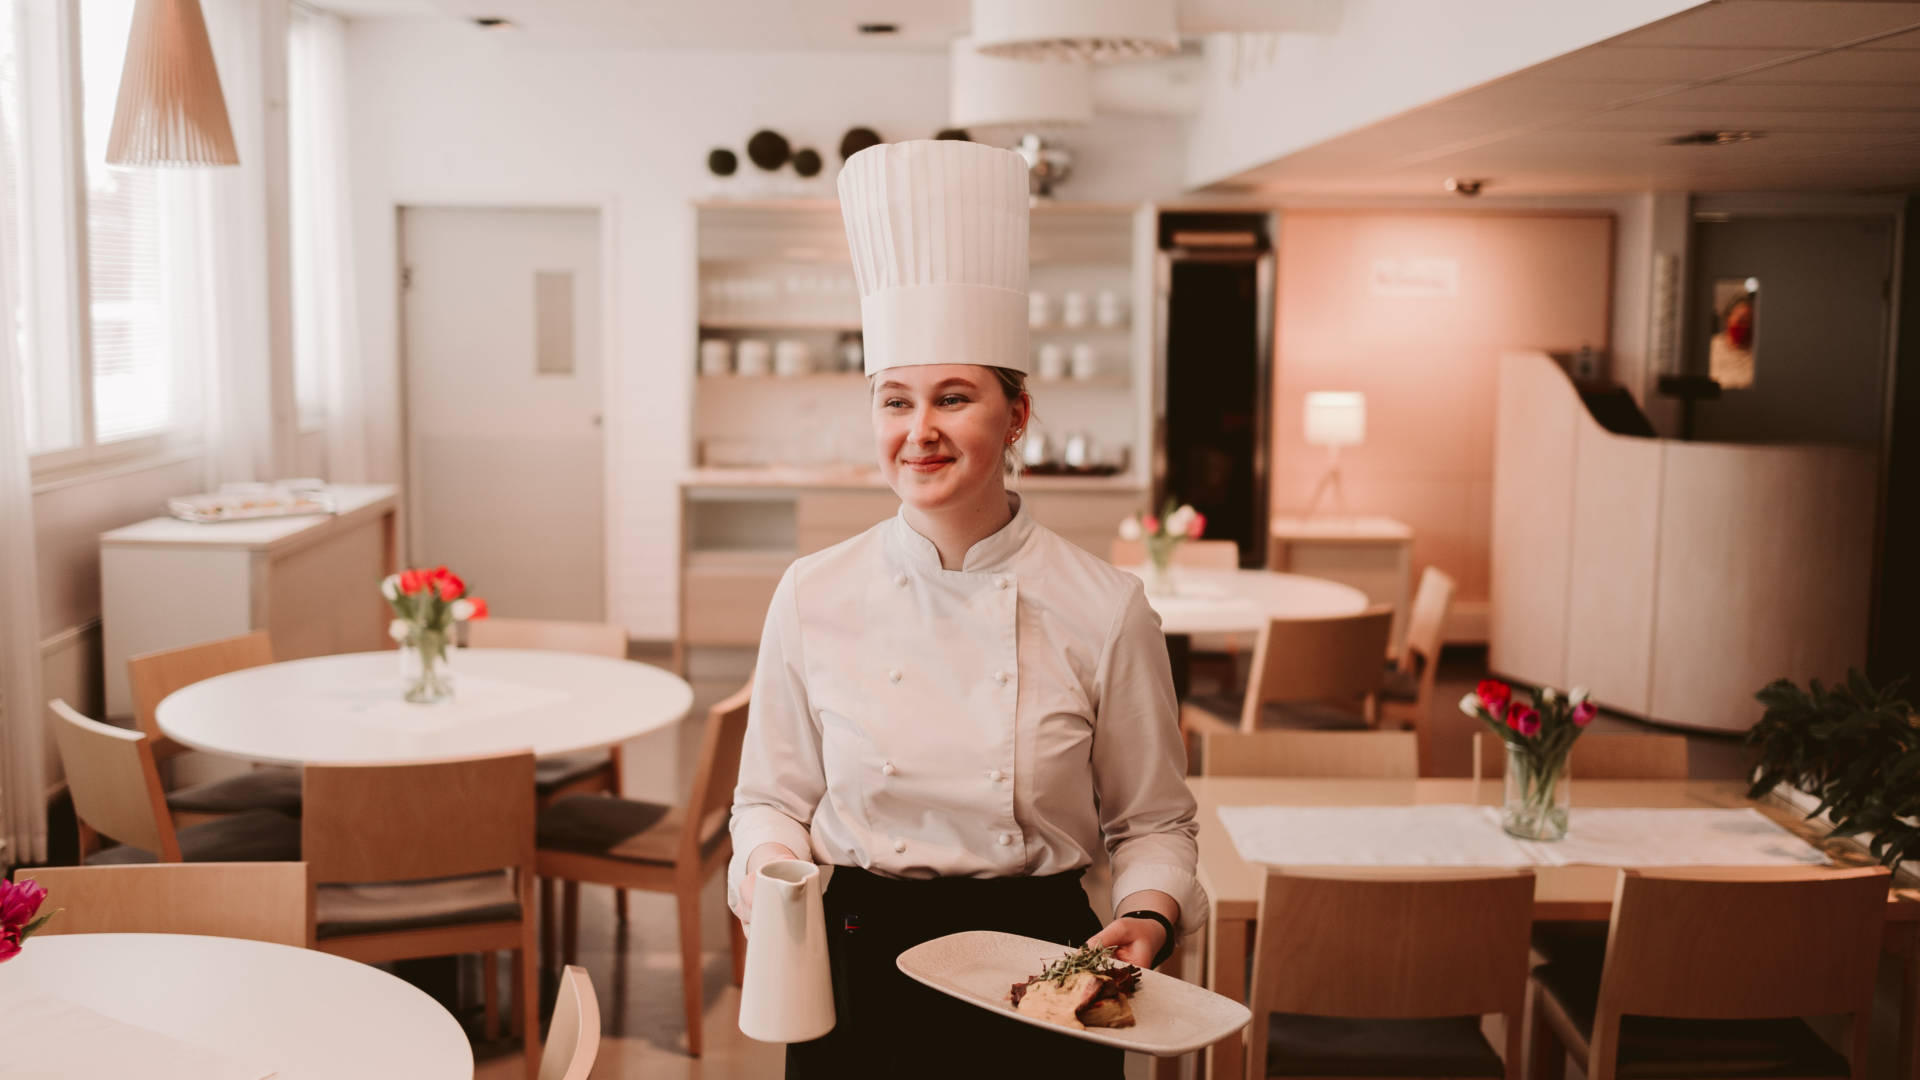 Nuori iloinen ravintola-alan opiskelija tarjoilee ruoka annosta opetusravintola Poukamassa kokin päähine päässään.